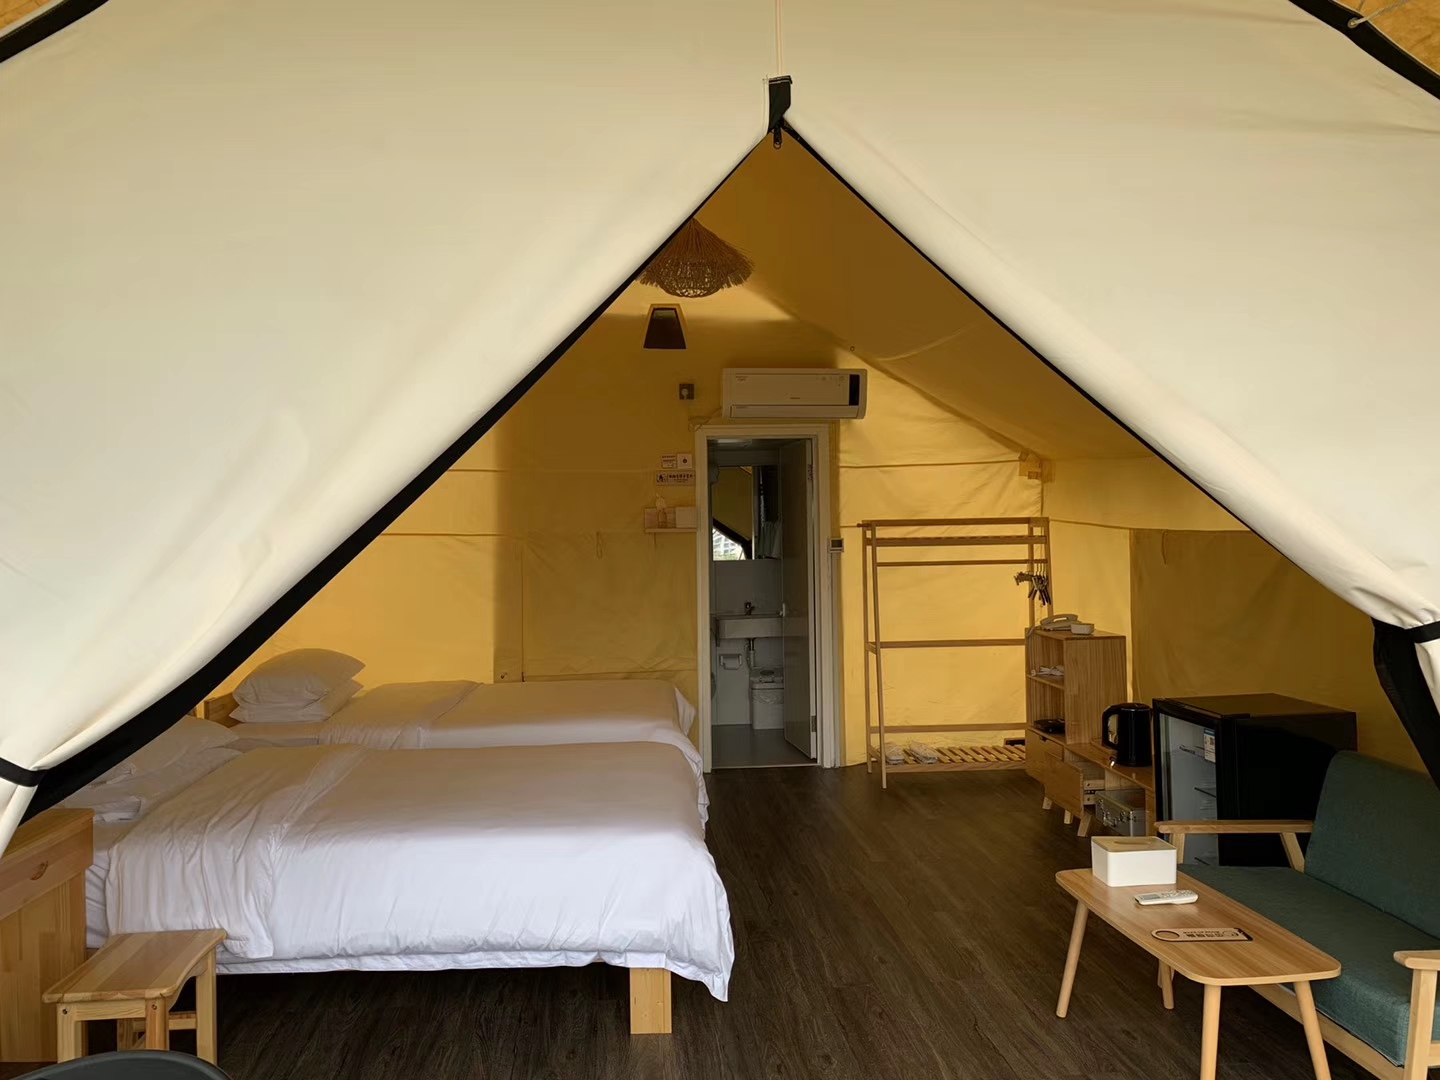 Tenda Tipi Tiang Kayu Tenda Safari Glamping Tenda Pernikahan Pesta Luar Ruangan Mewah (2)(1)